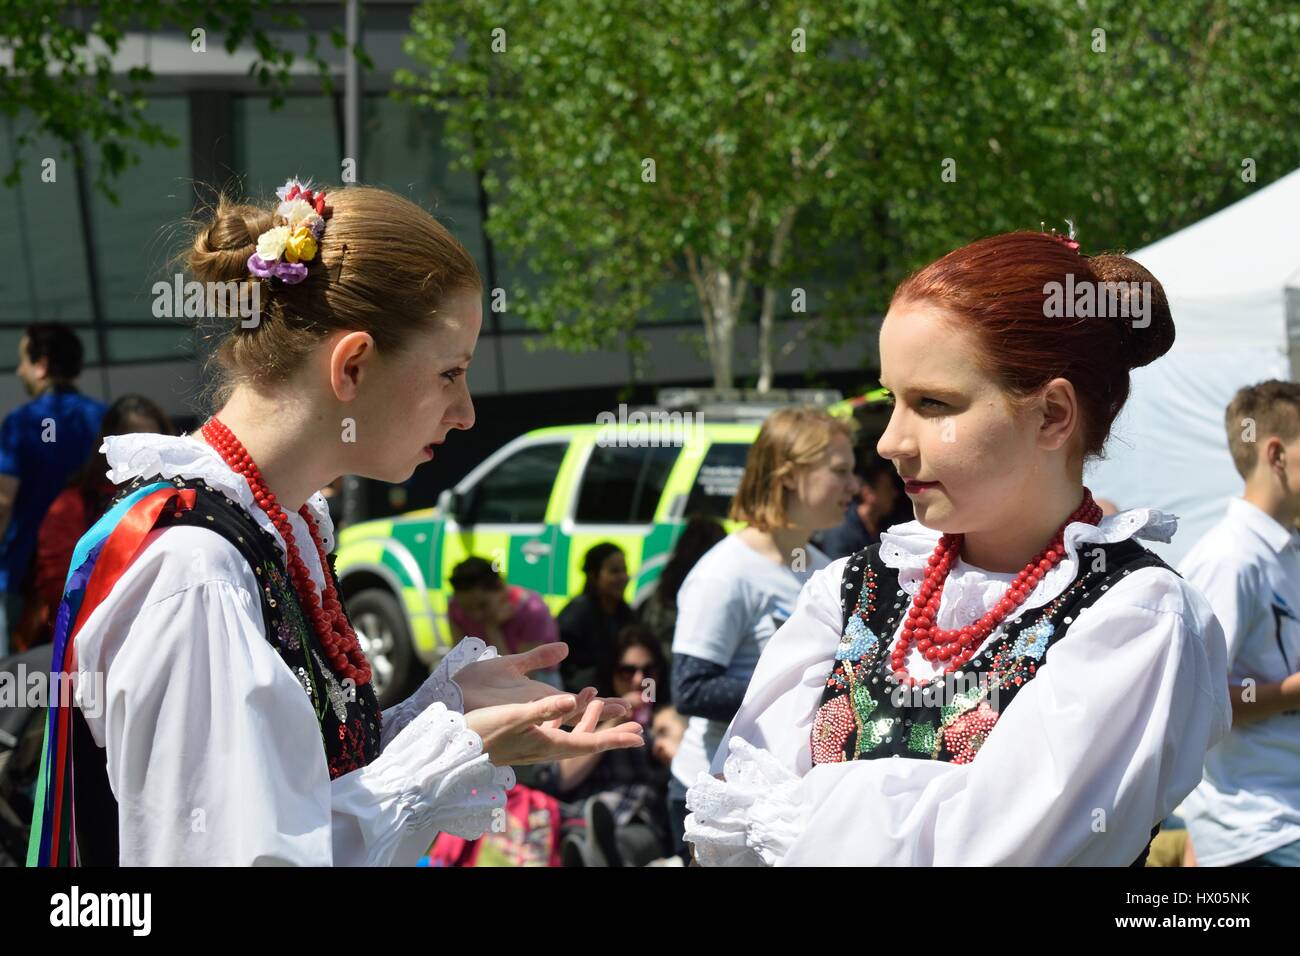 LONDON ENGLAND 9. Mai 2015: zwei Mädchen in der traditionellen polnischen Kostüm im Chat Stockfoto